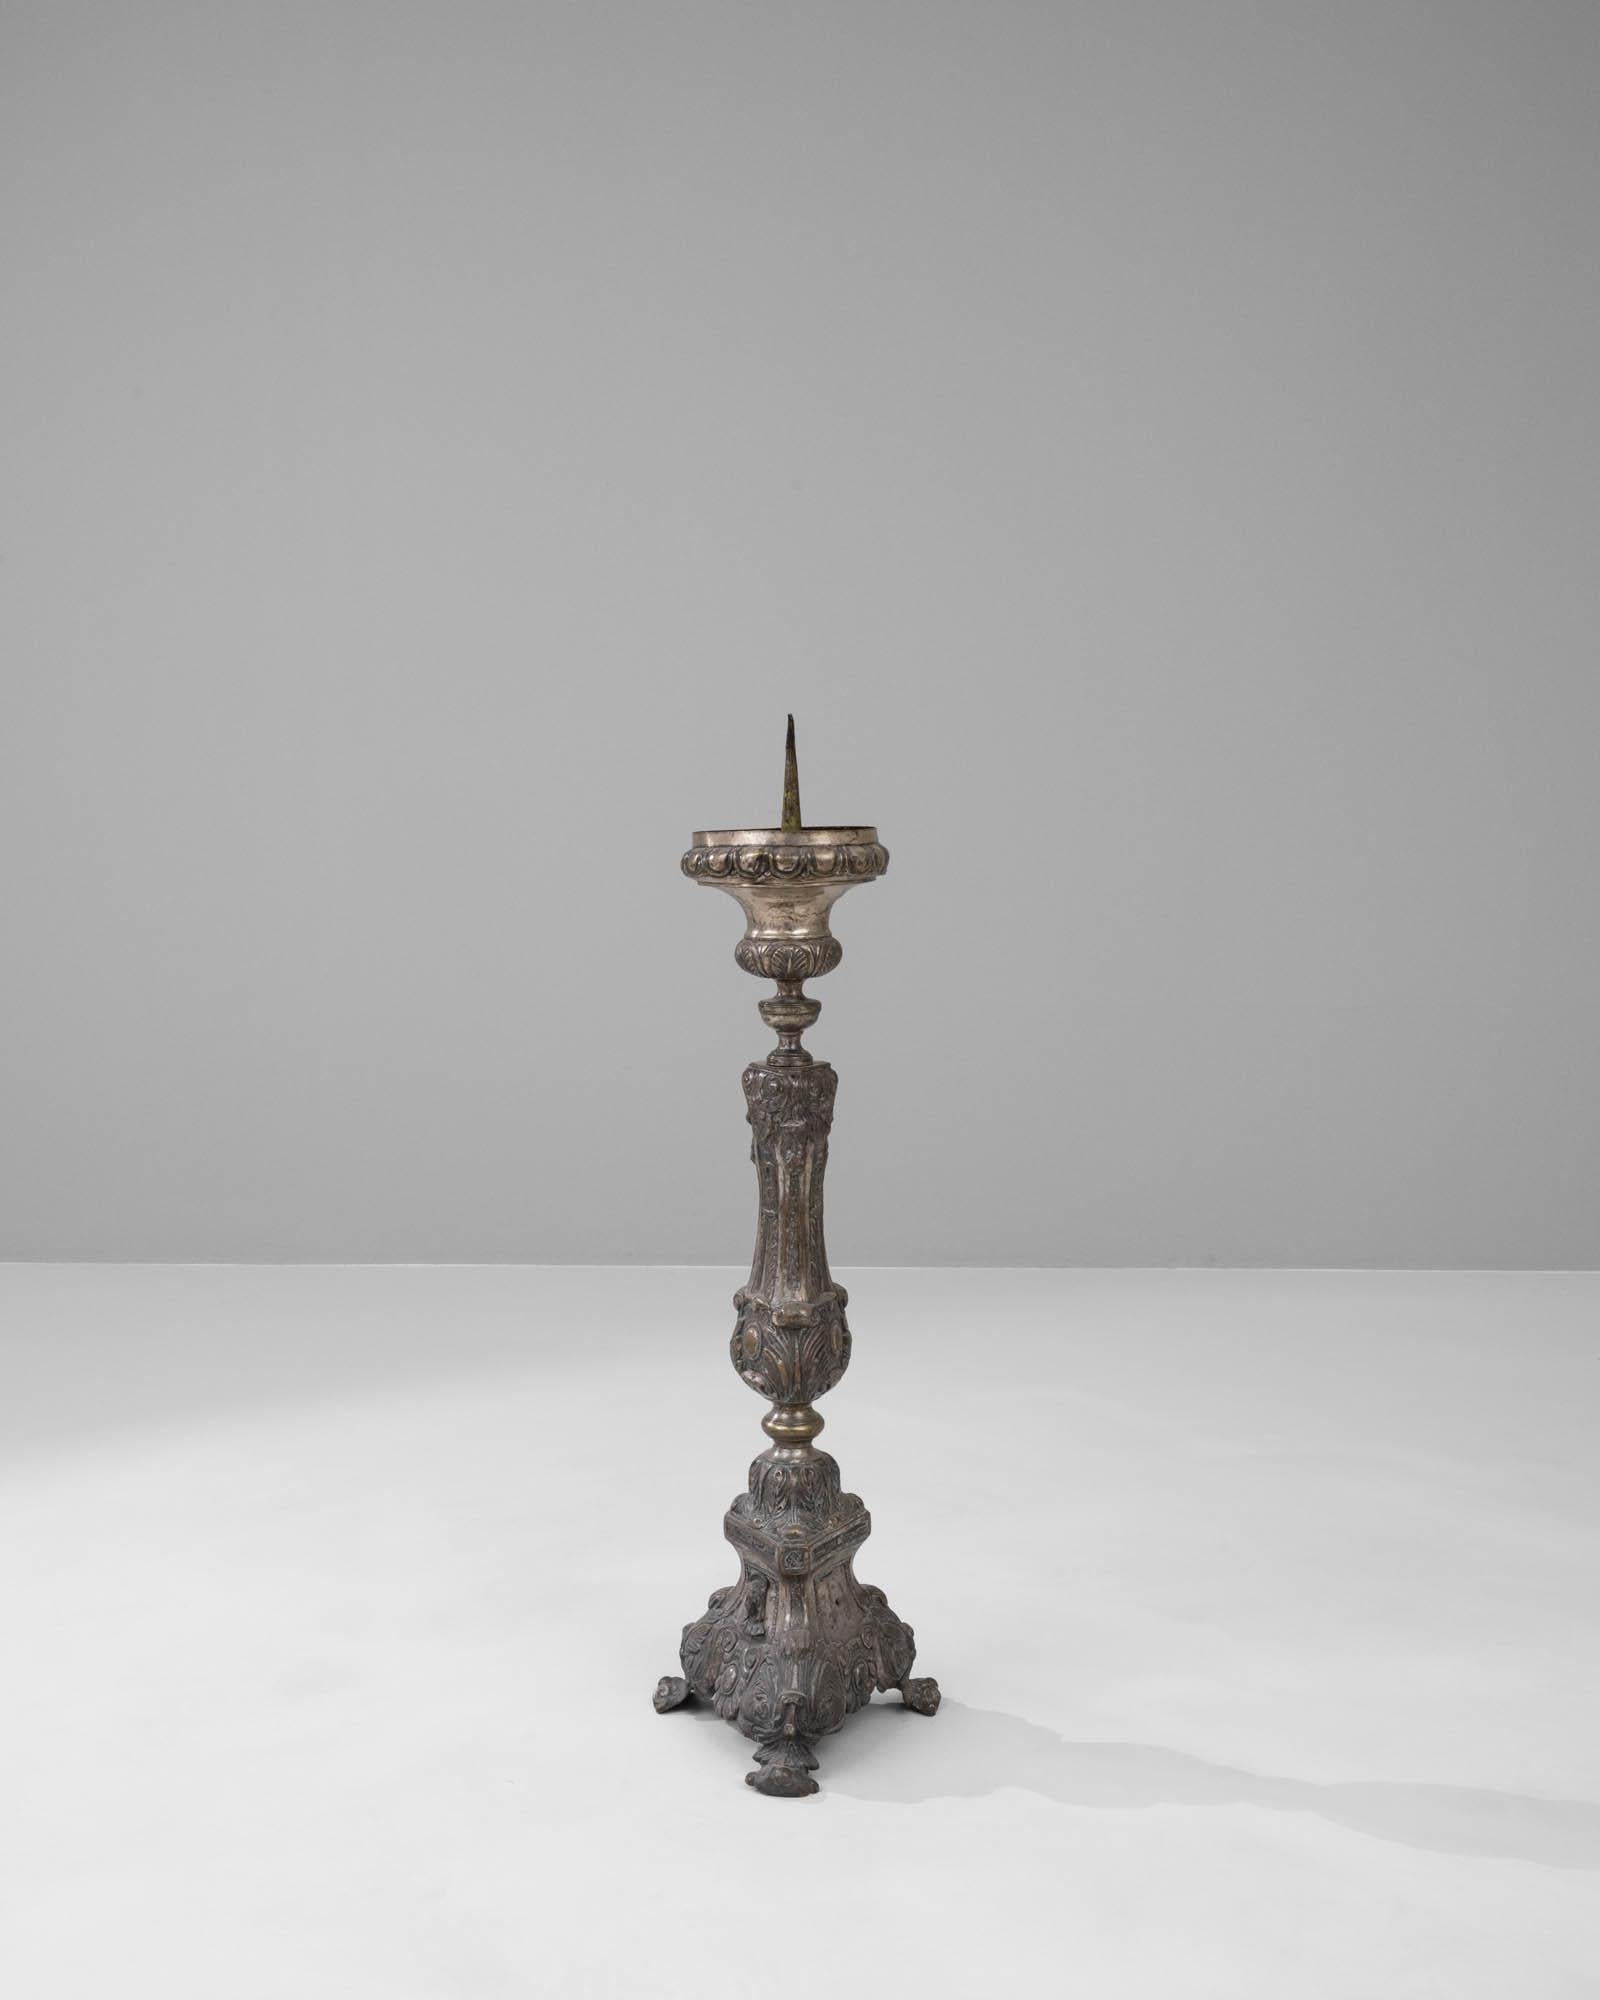 Dieser französische Metall-Kerzenhalter aus dem 20. Jahrhundert ist ein exquisites Dekorationsstück, das von ornamentaler Schönheit und klassischem Charme geprägt ist. Die komplizierten Details an Schaft und Sockel spiegeln die Pracht des Barocks